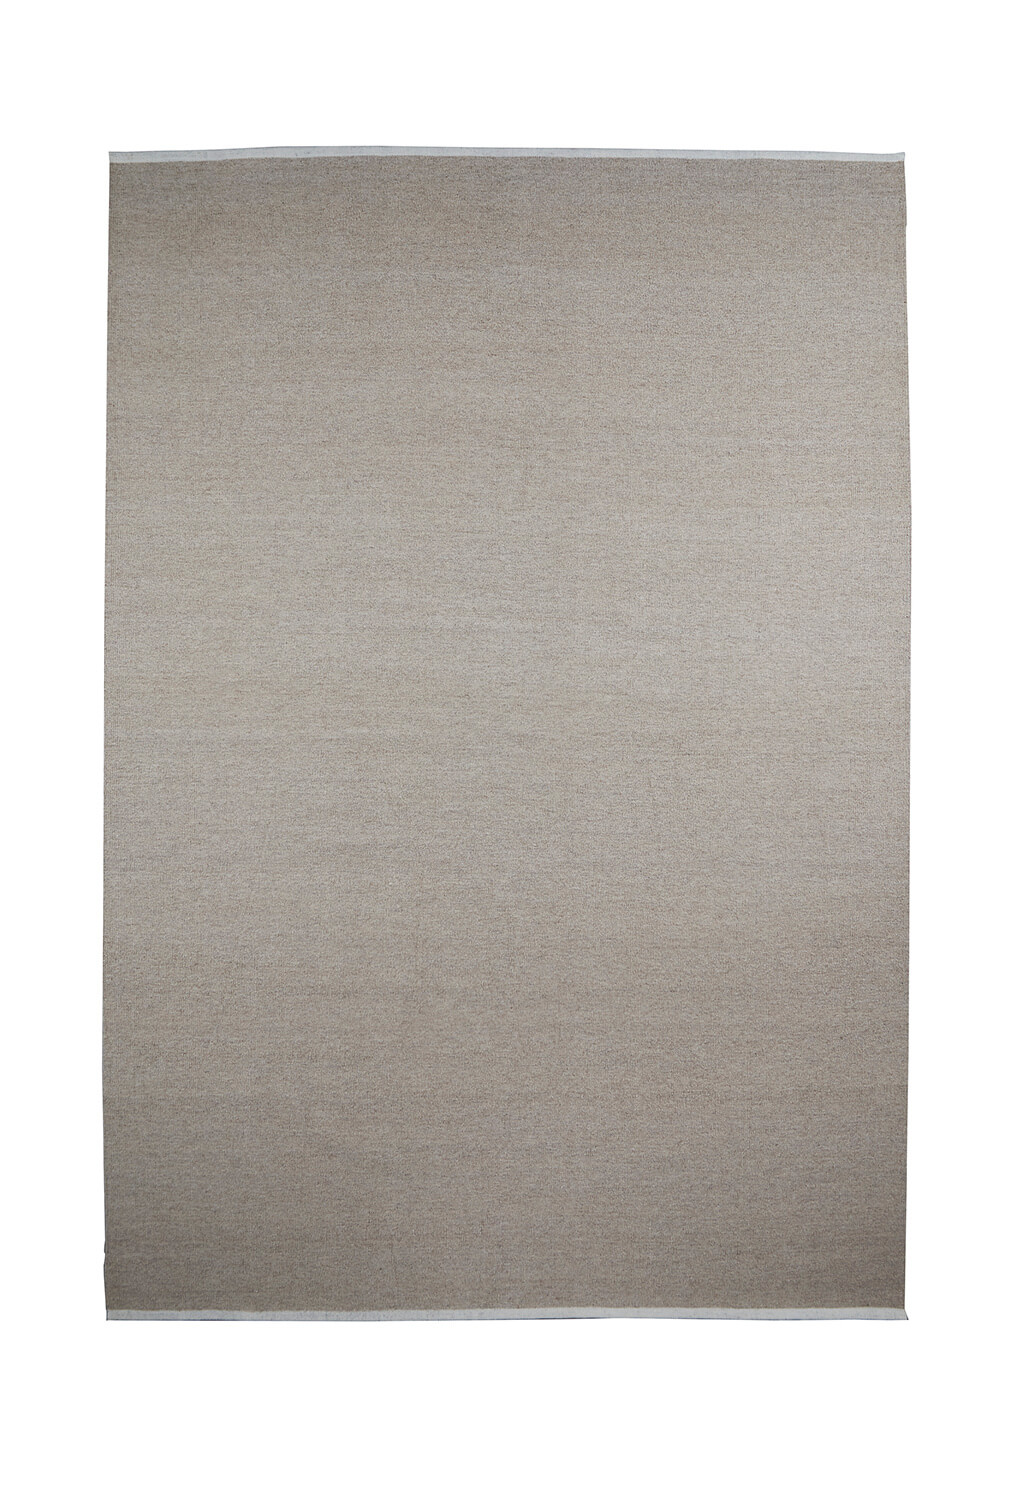 Escape Kelim Teppich mit Nähten, 170 x 240 cm, light beige